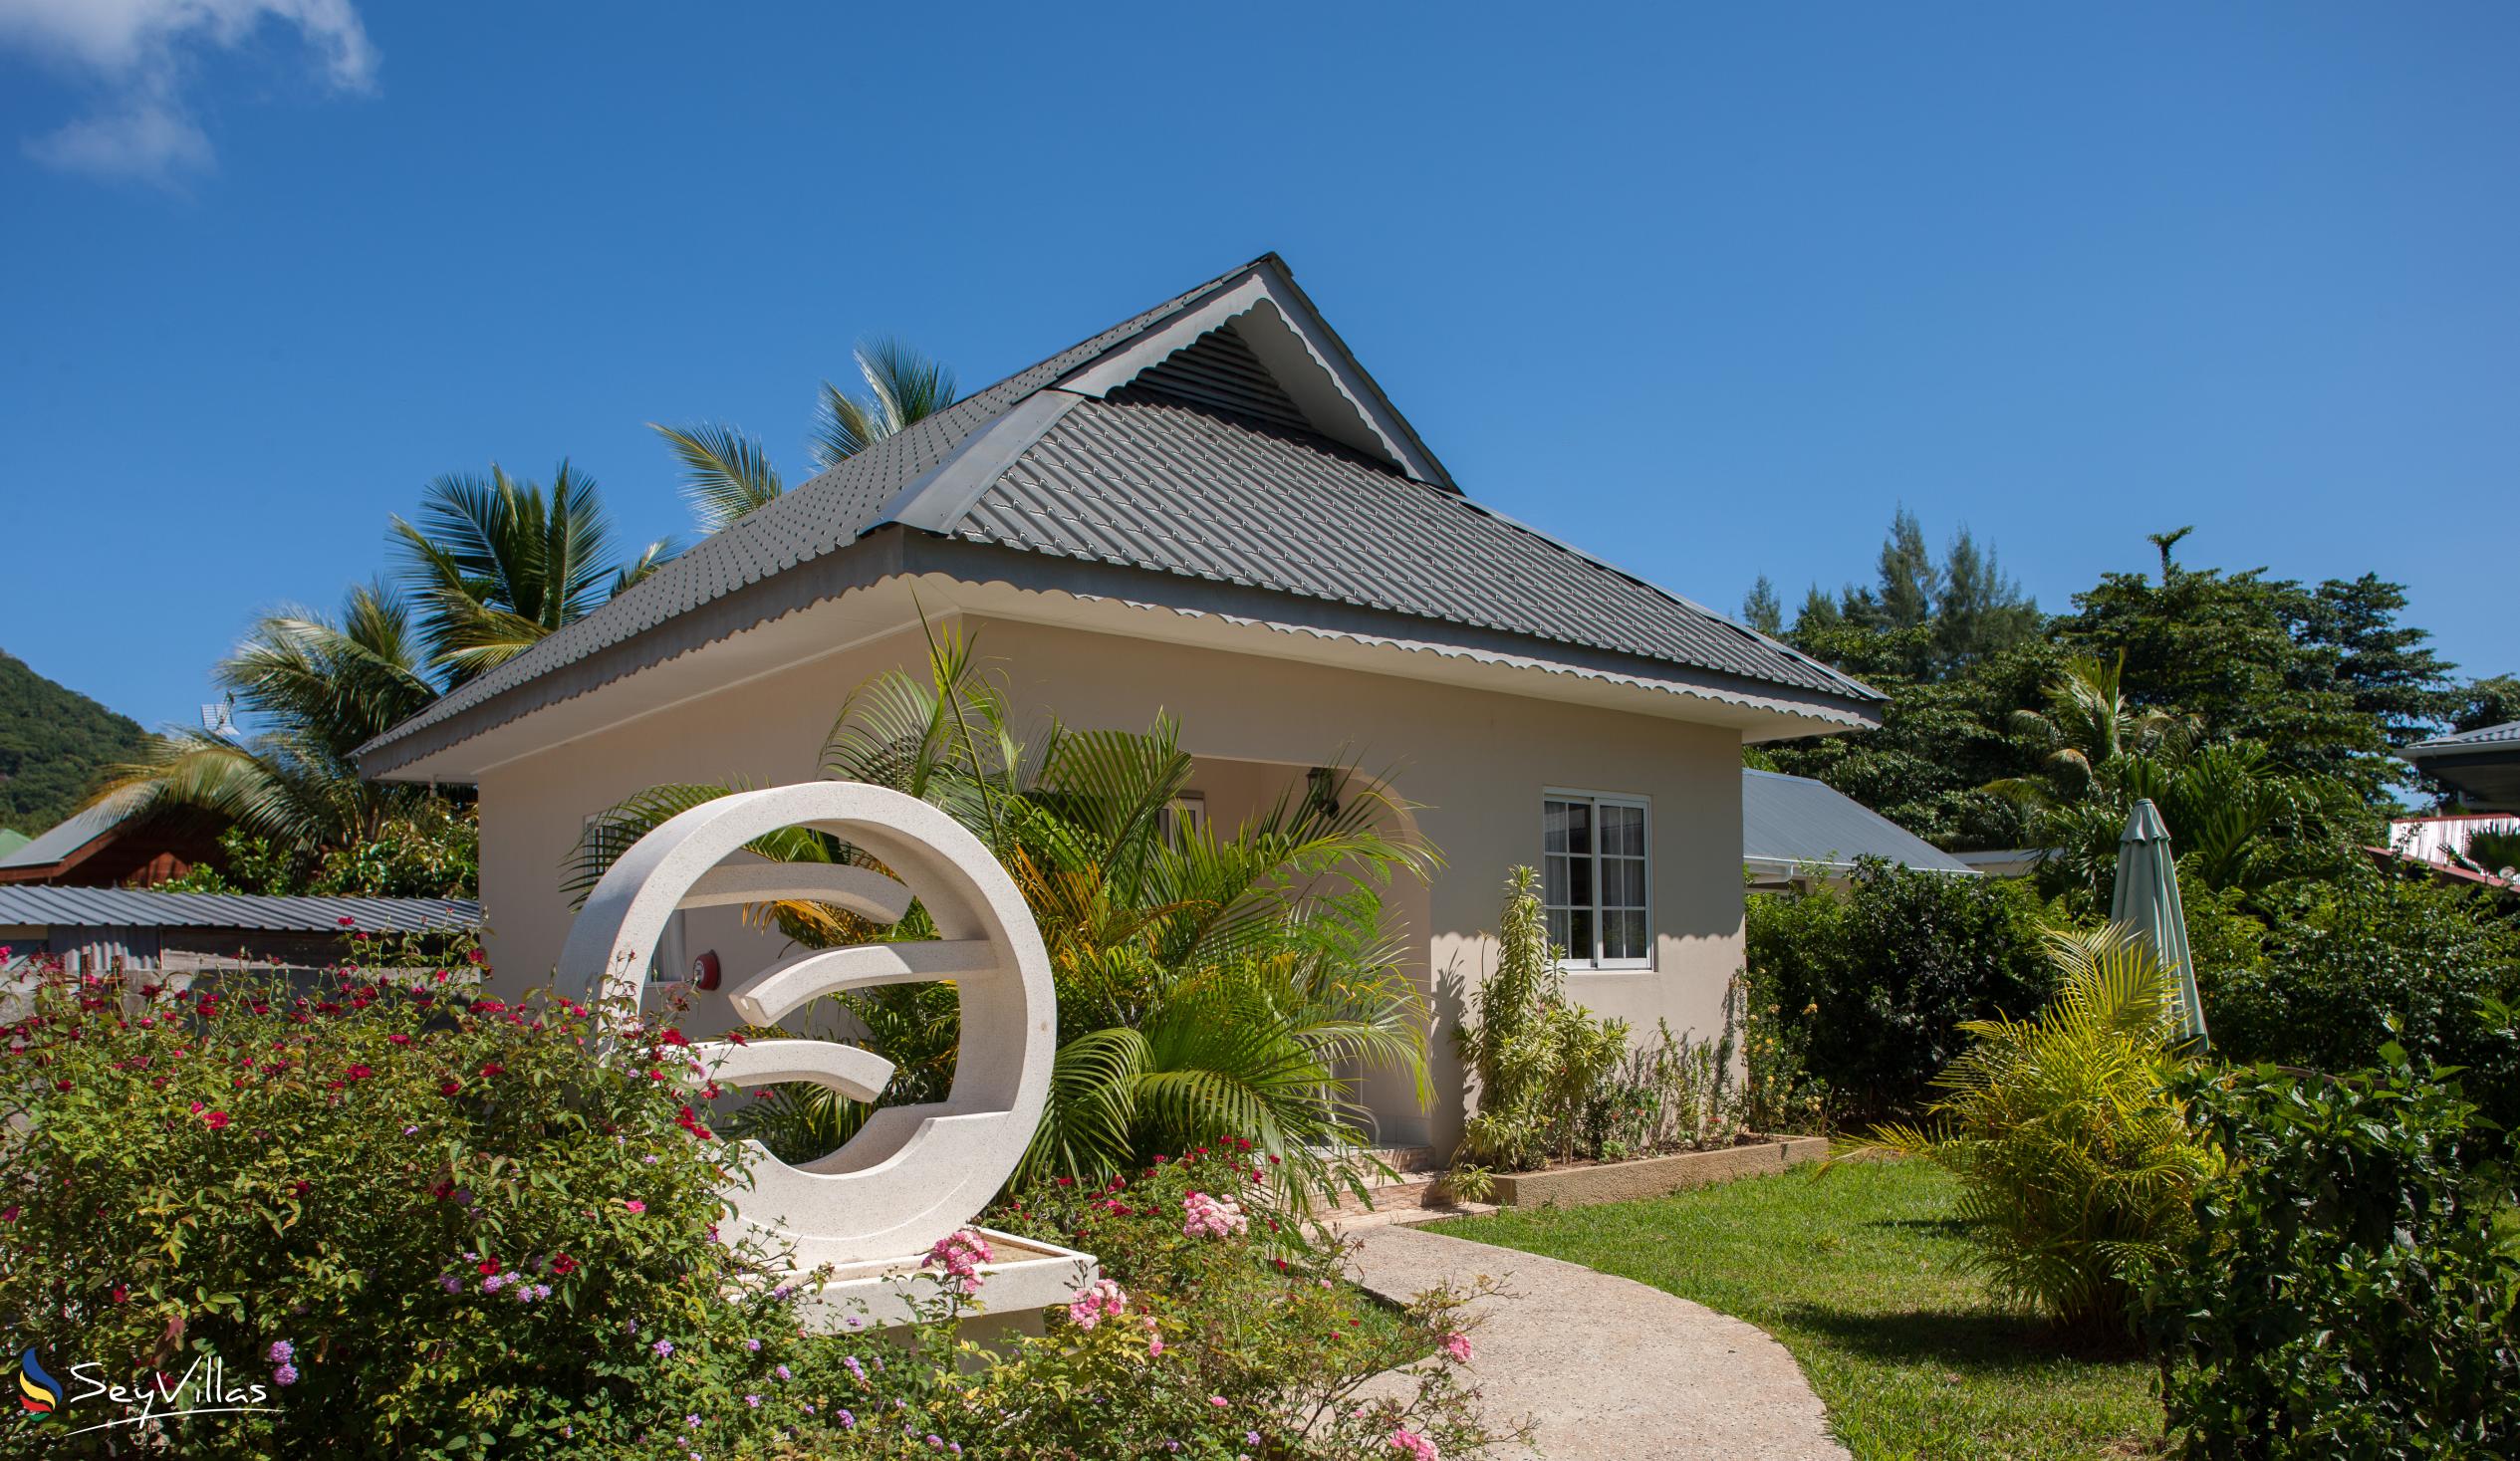 Foto 6: Villa Source D'Argent - Extérieur - La Digue (Seychelles)